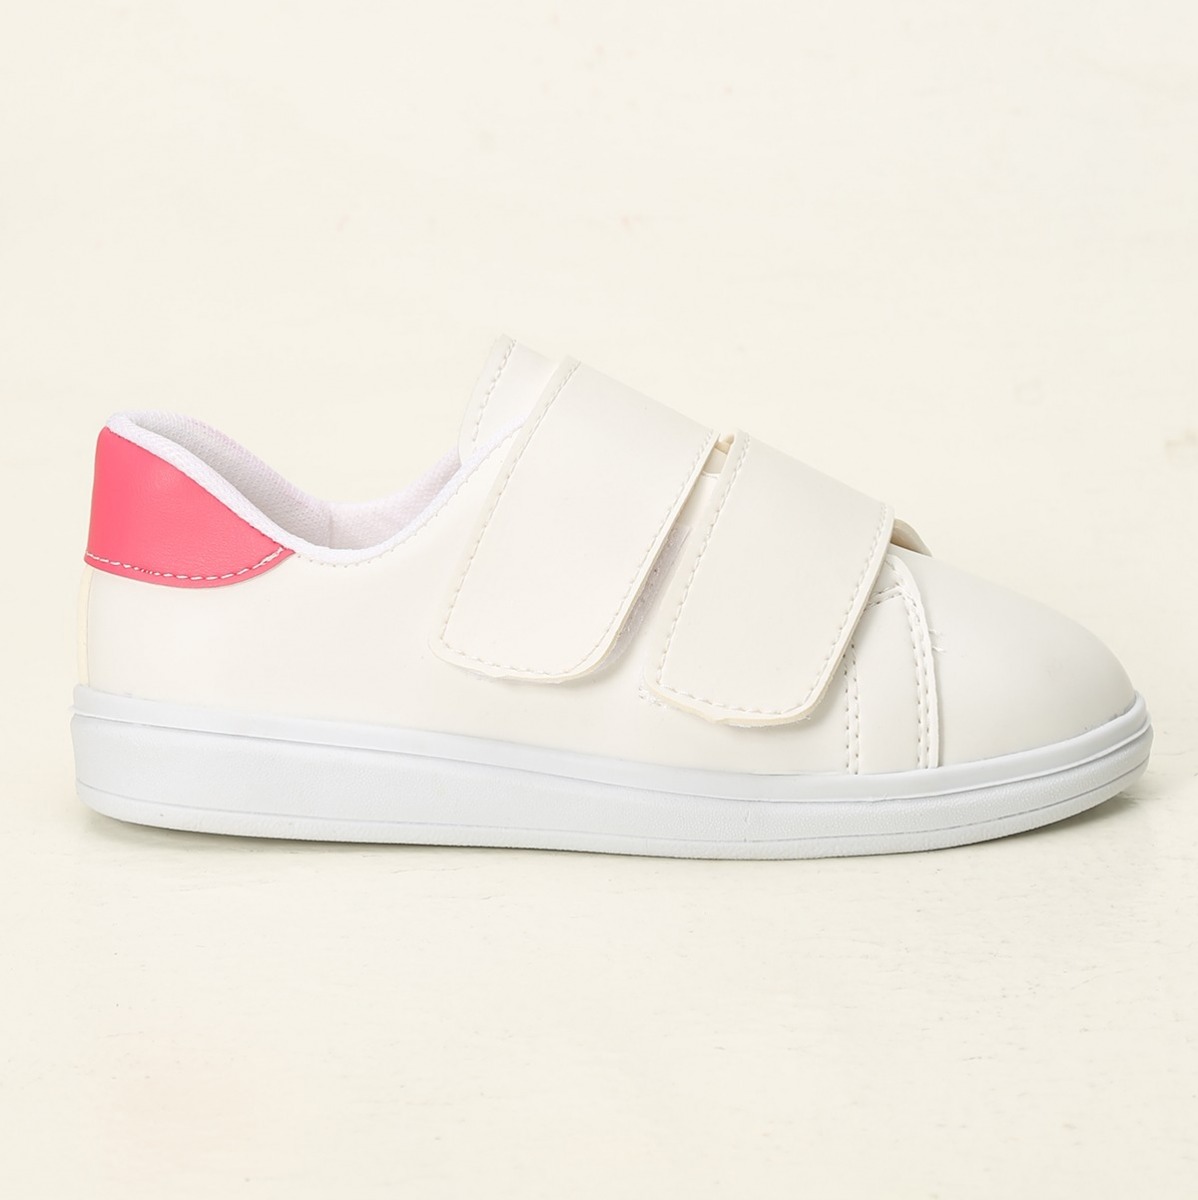 Flo Beyaz-Fuşya Kadın Cırtlı Spor Ayakkabı 4000-19-101003. 3